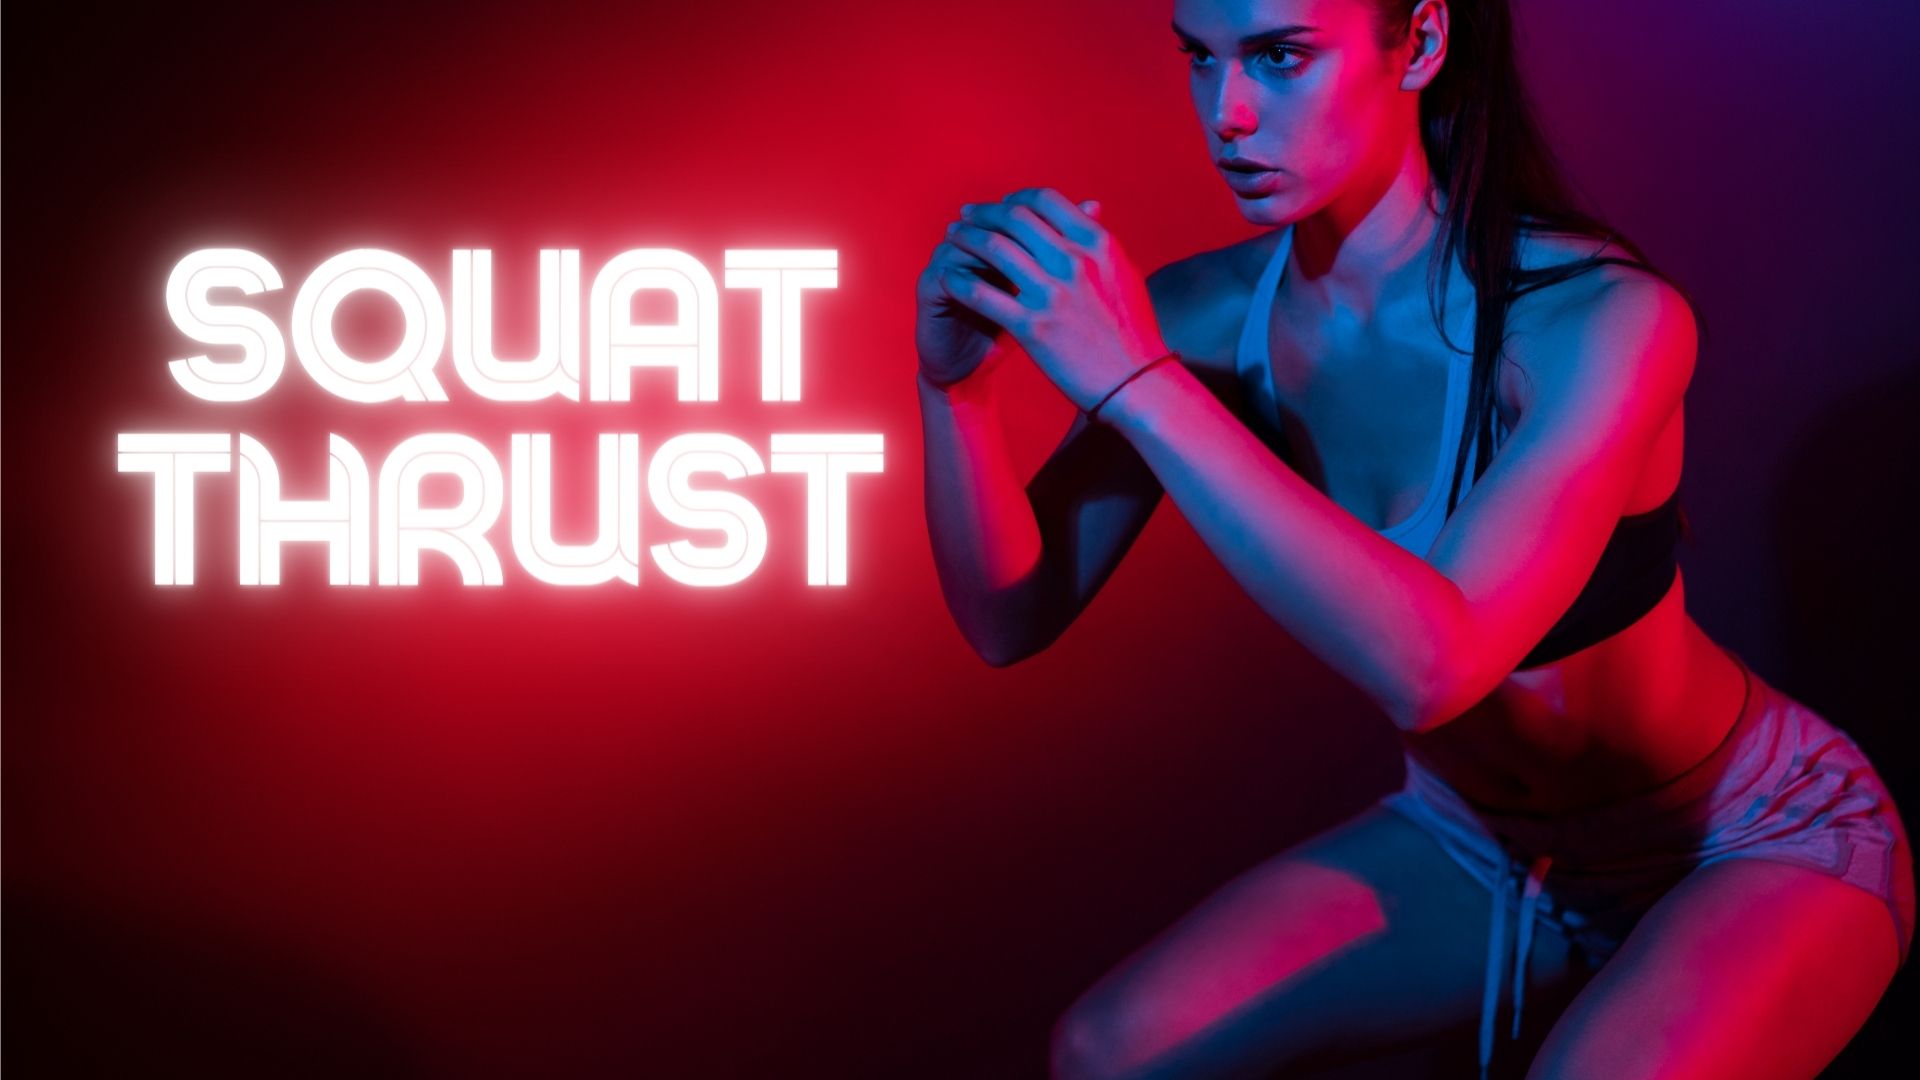 Squat Thrusts